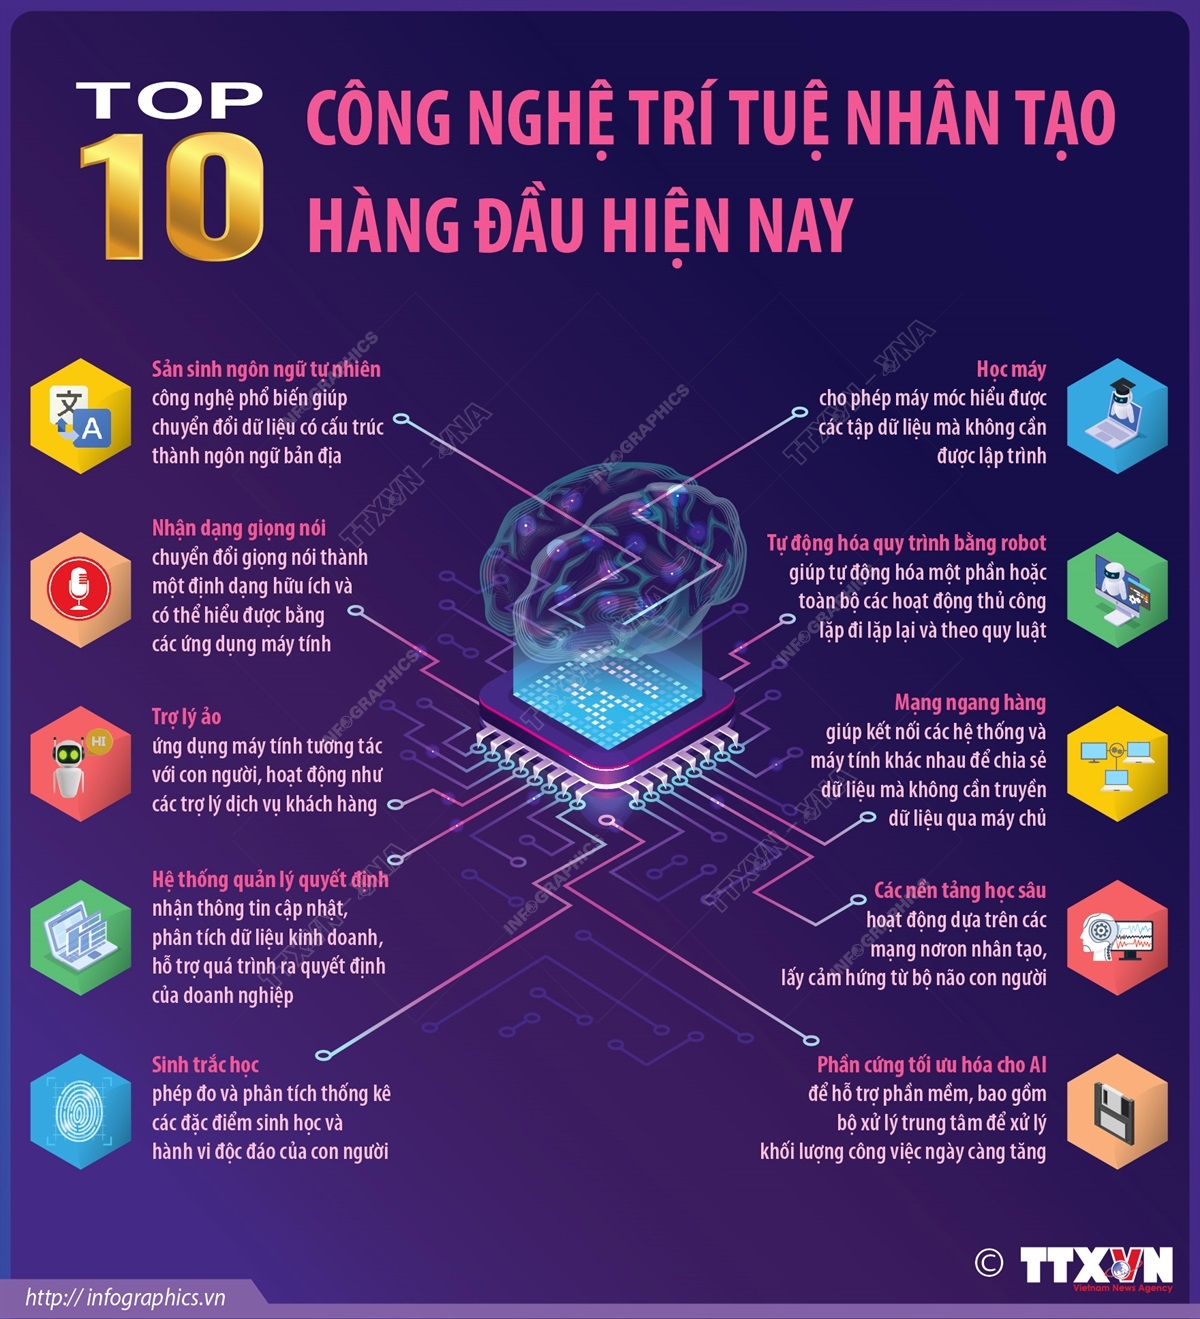 Top 10 công nghệ trí tuệ nhân tạo hàng đầu hiện nay - Ảnh 1.